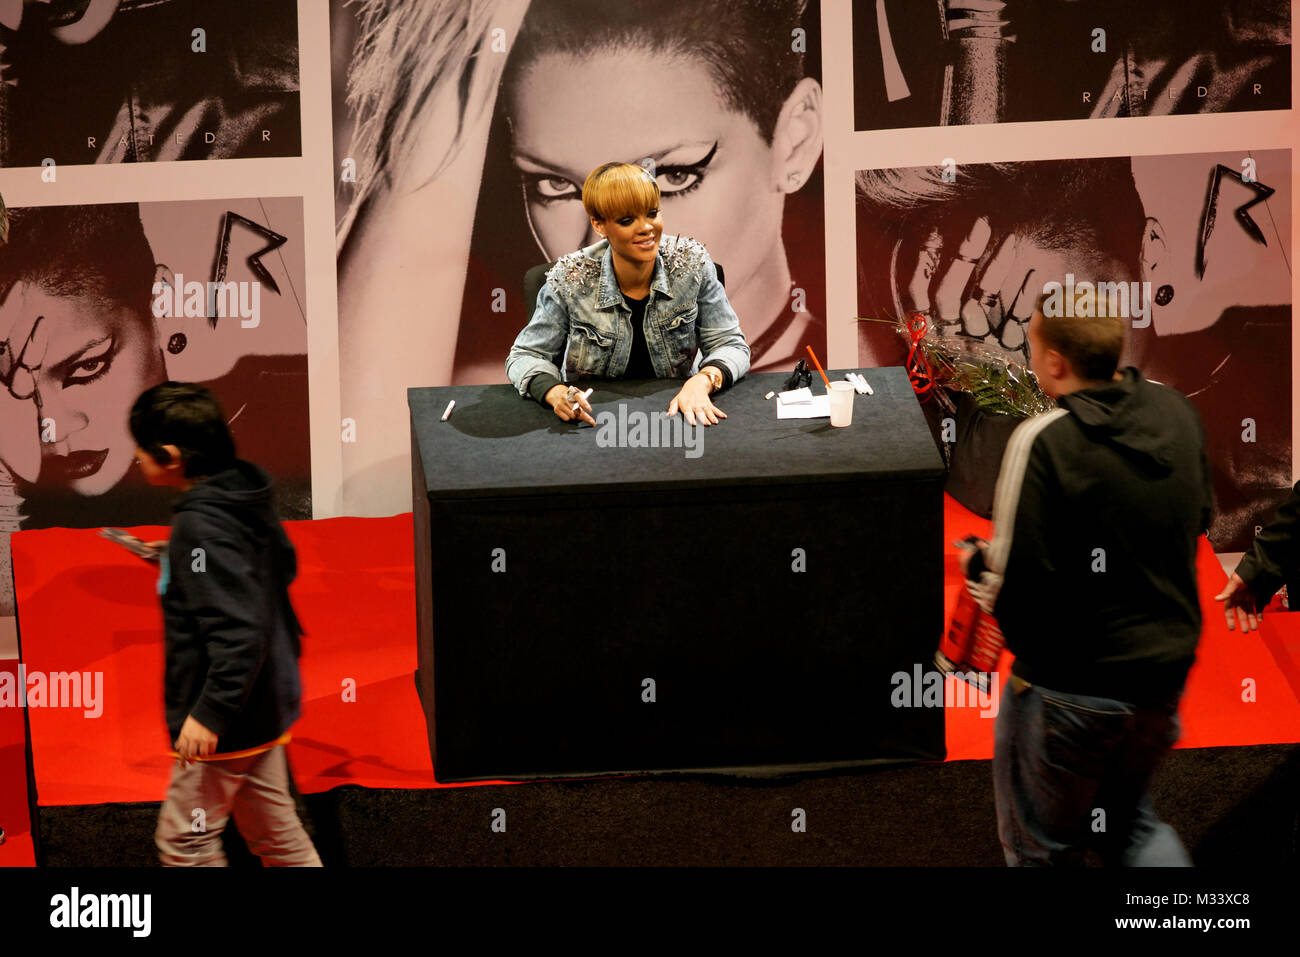 Rihanna bei einer Autogrammstunde im Berliner Shopping Center Alexa. Stock Photo